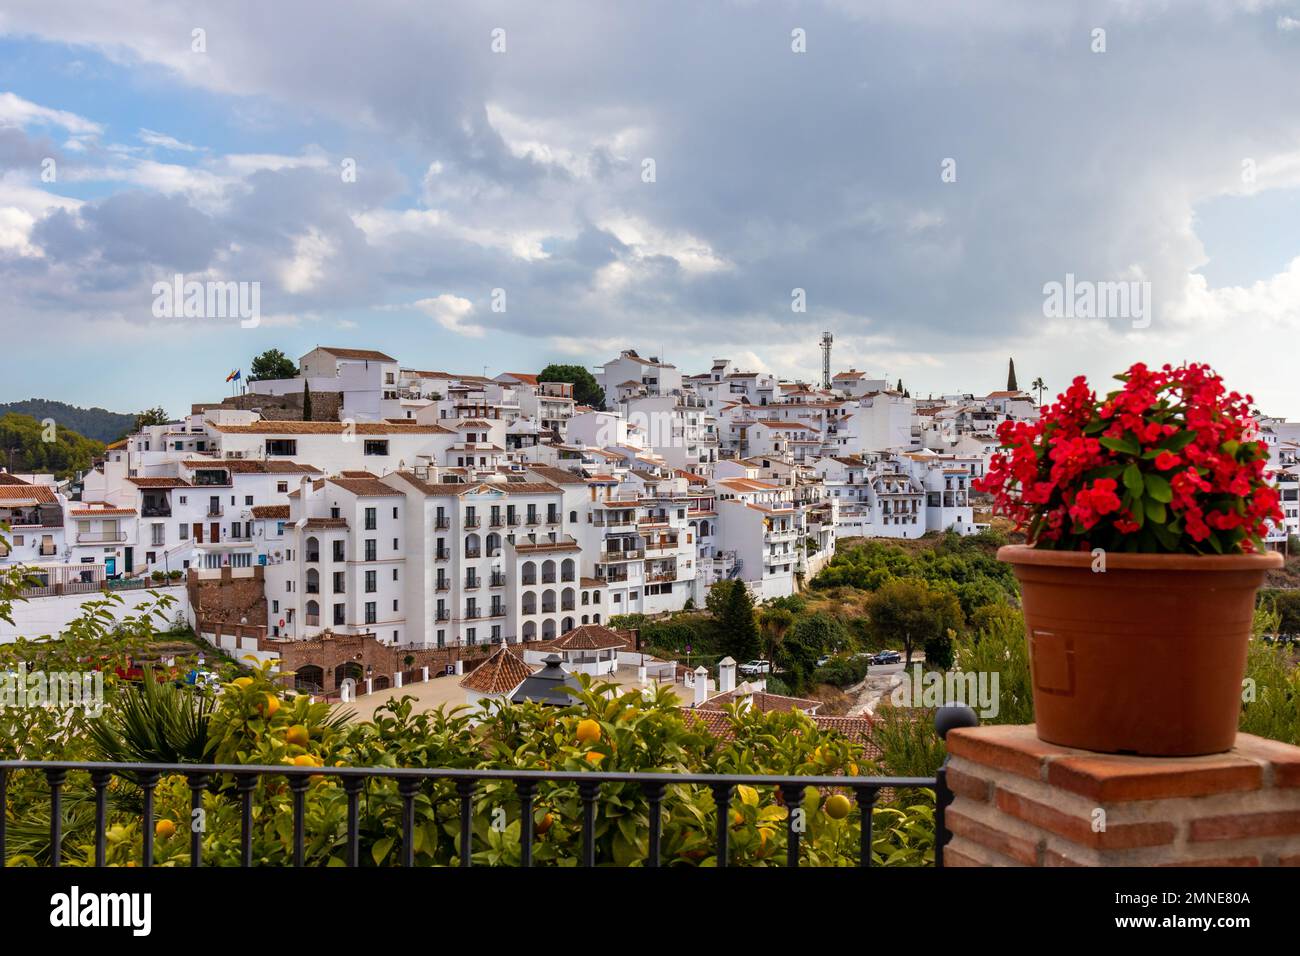 Panoramafoto von Frigiliana, Malaga, einer der schönsten Städte Spaniens. Mit seinen weißen Mauern, den engen Gassen und vielen Treppen. Stockfoto